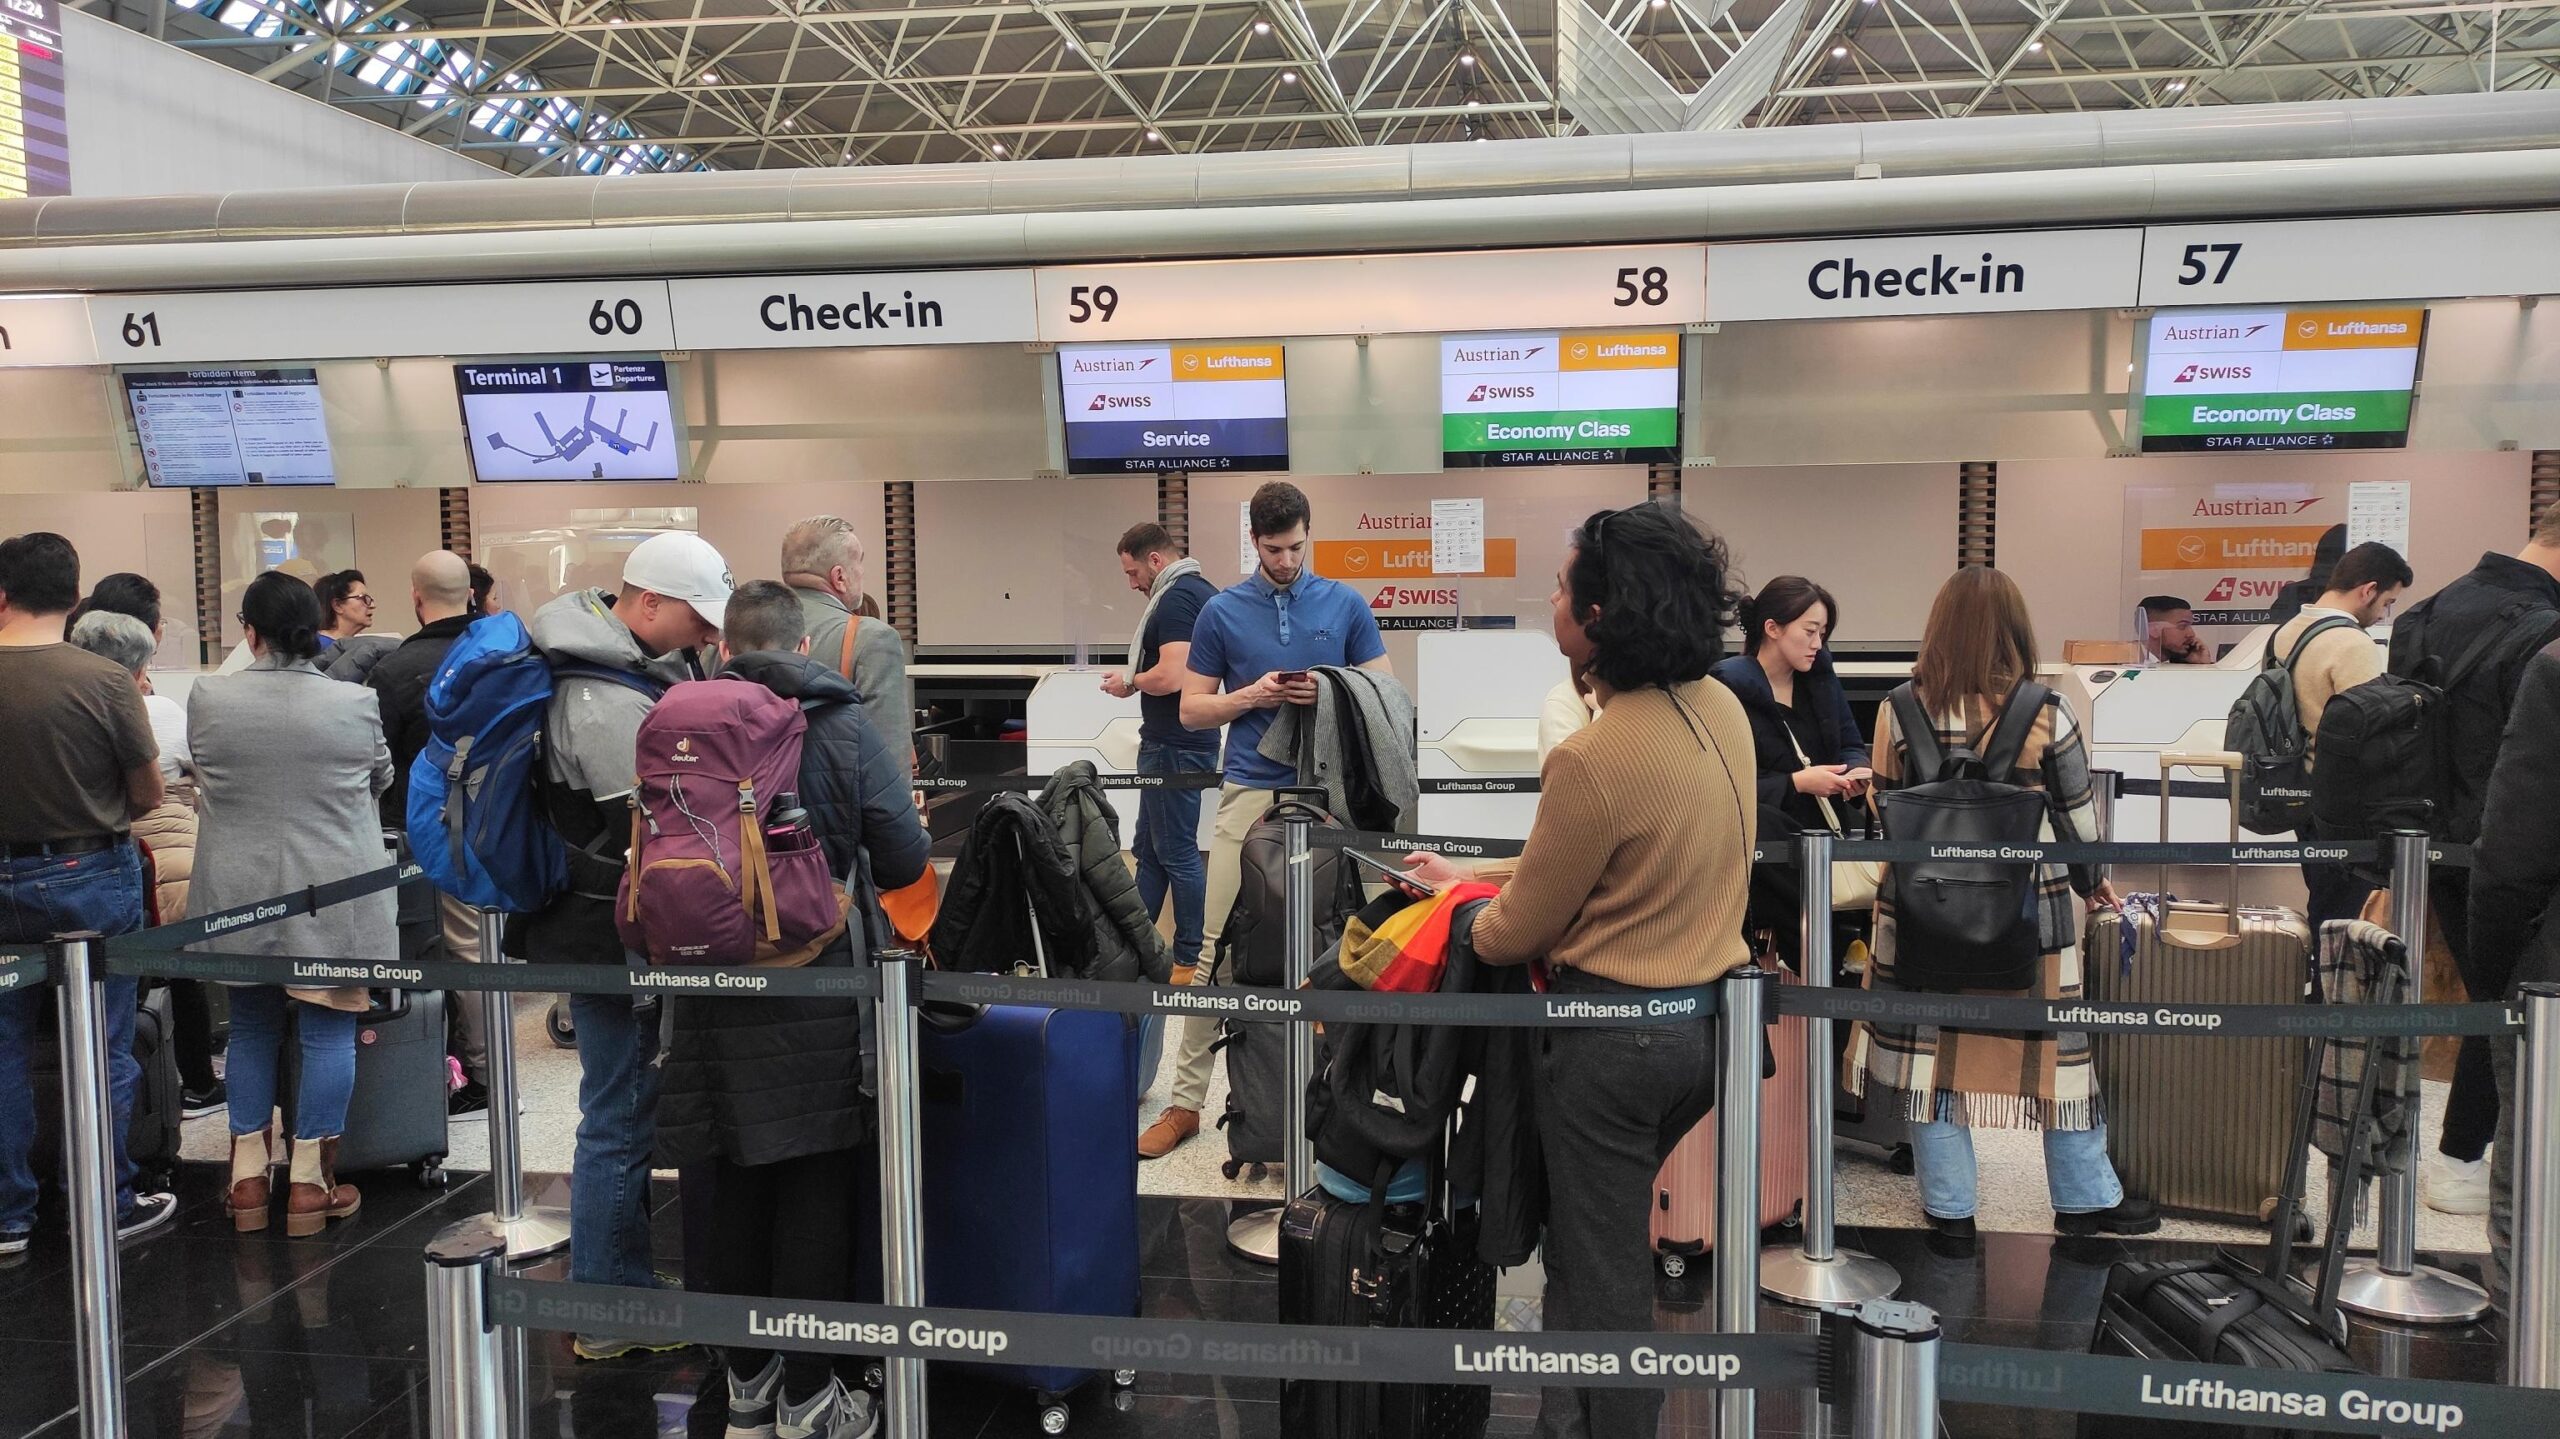 All'aeroporto di Fiumicino, per il momento, due i voli della compagnia Lufthansa cancellati in partenza e 5 in ritardo a causa dei problemi informatici registrati in Germania. Fiumicino, Roma, 15 febbraio 2023. ANSA/TELENEWS